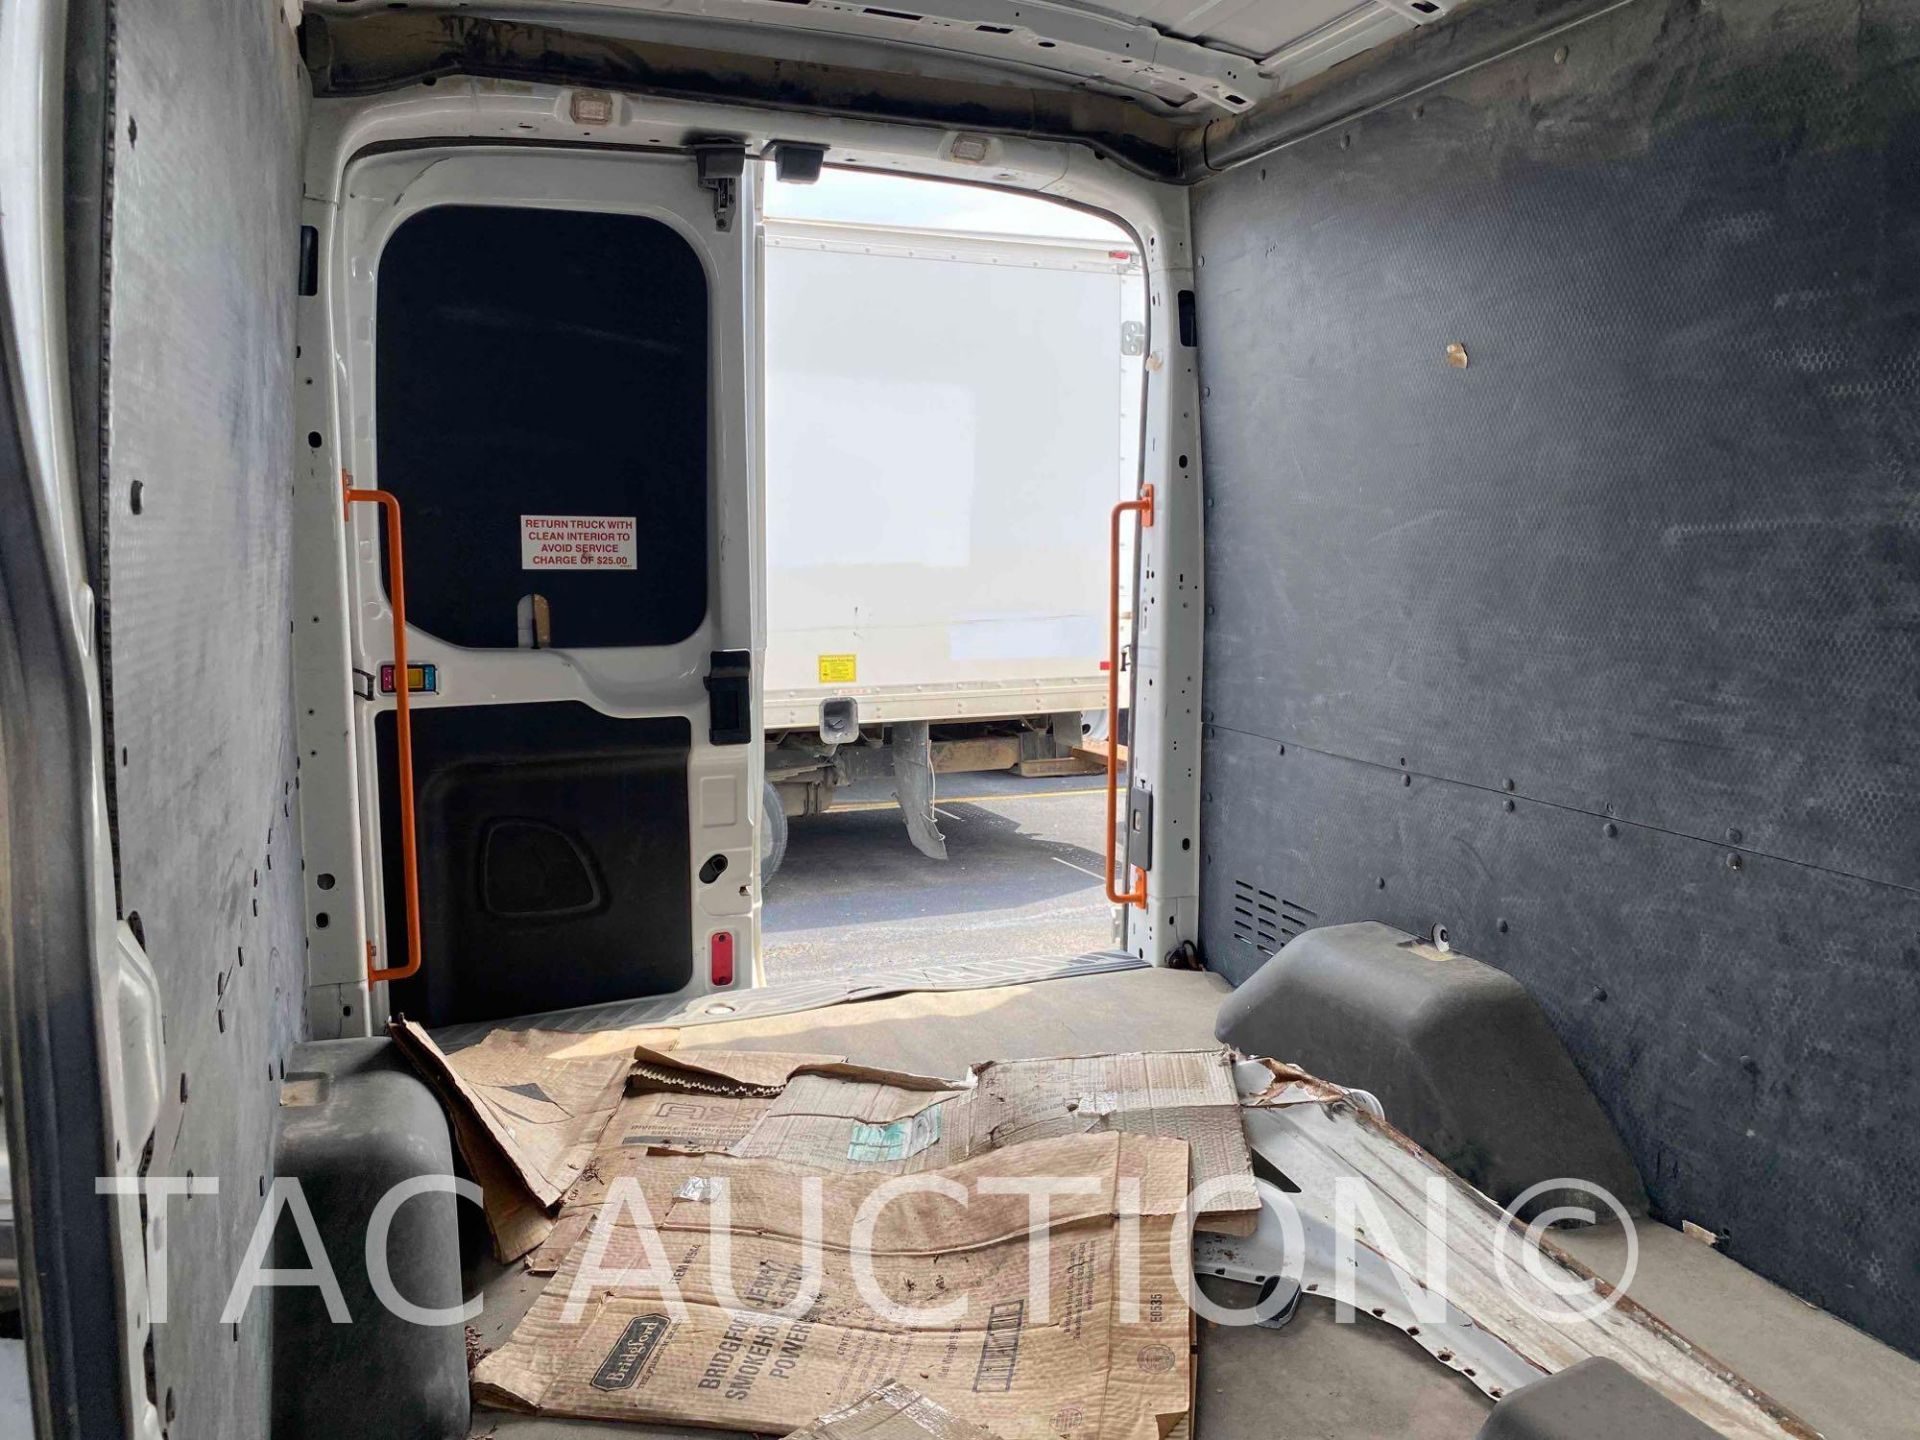 2019 Ford Transit 150 Cargo Van - Image 11 of 43